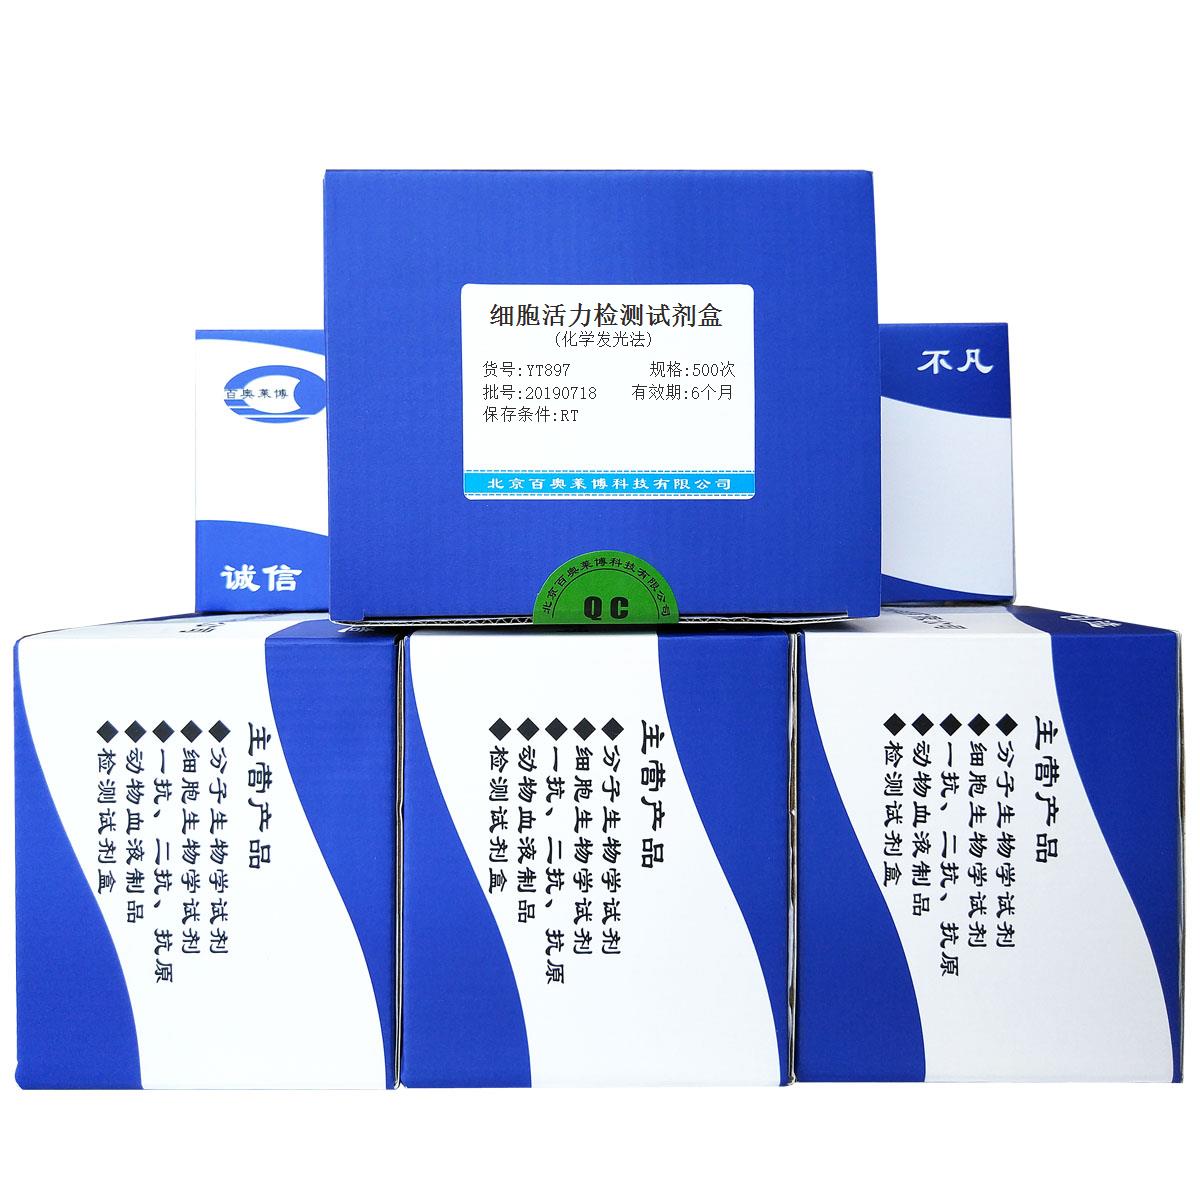 细胞活力检测试剂盒(化学发光法)北京厂家